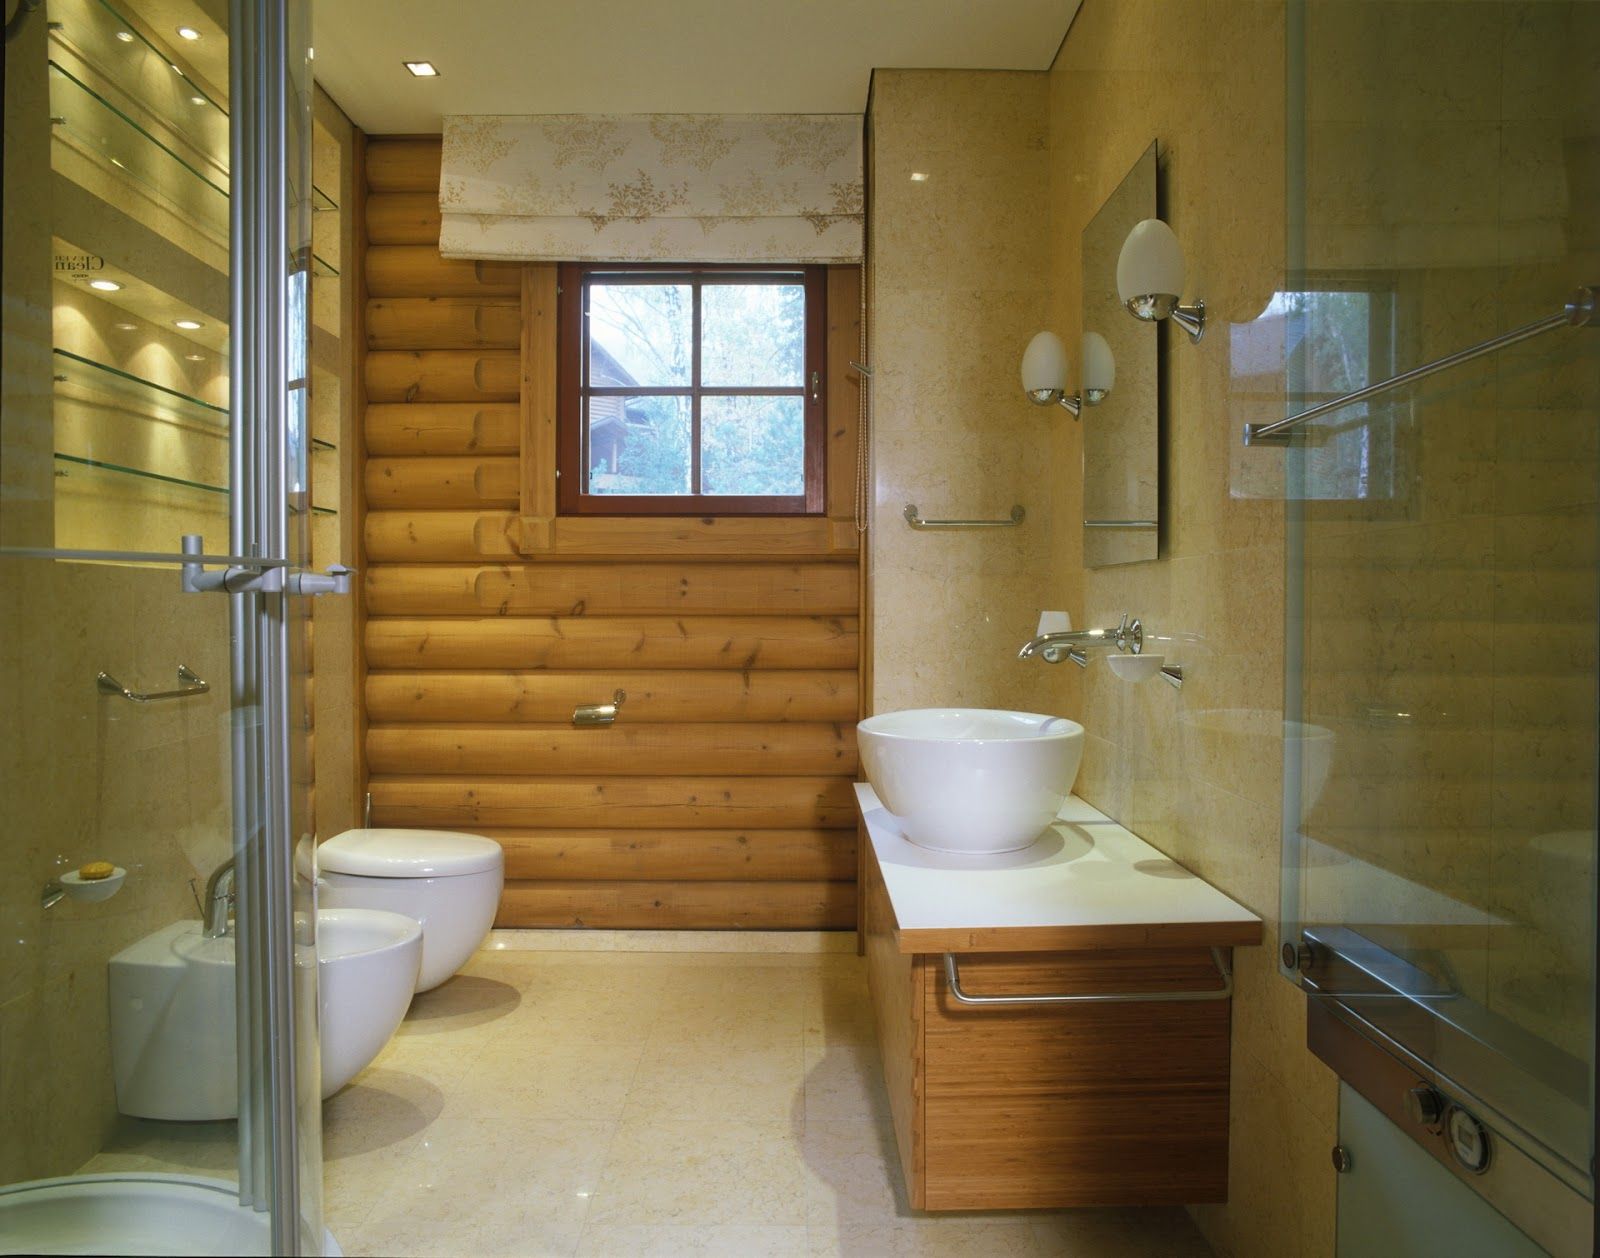 Ванная комната своими руками в частном доме, фото